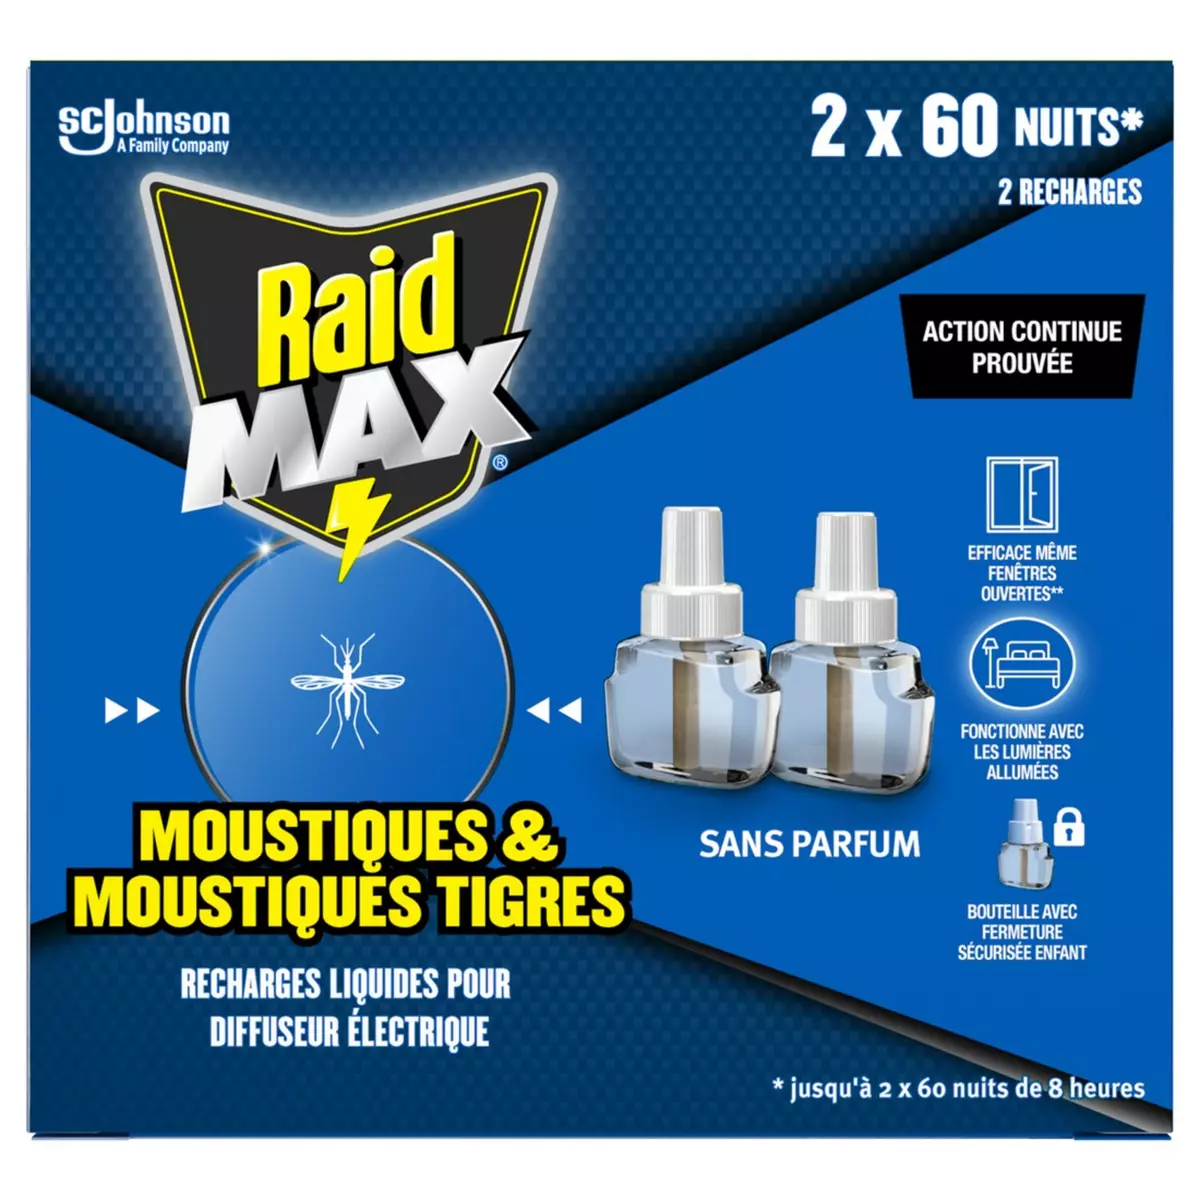 RAID Max Recharge liquide pour diffuseur électrique contre les moustiques et les moustiques tigres sans parfum 2x60 nuits 2 recharges